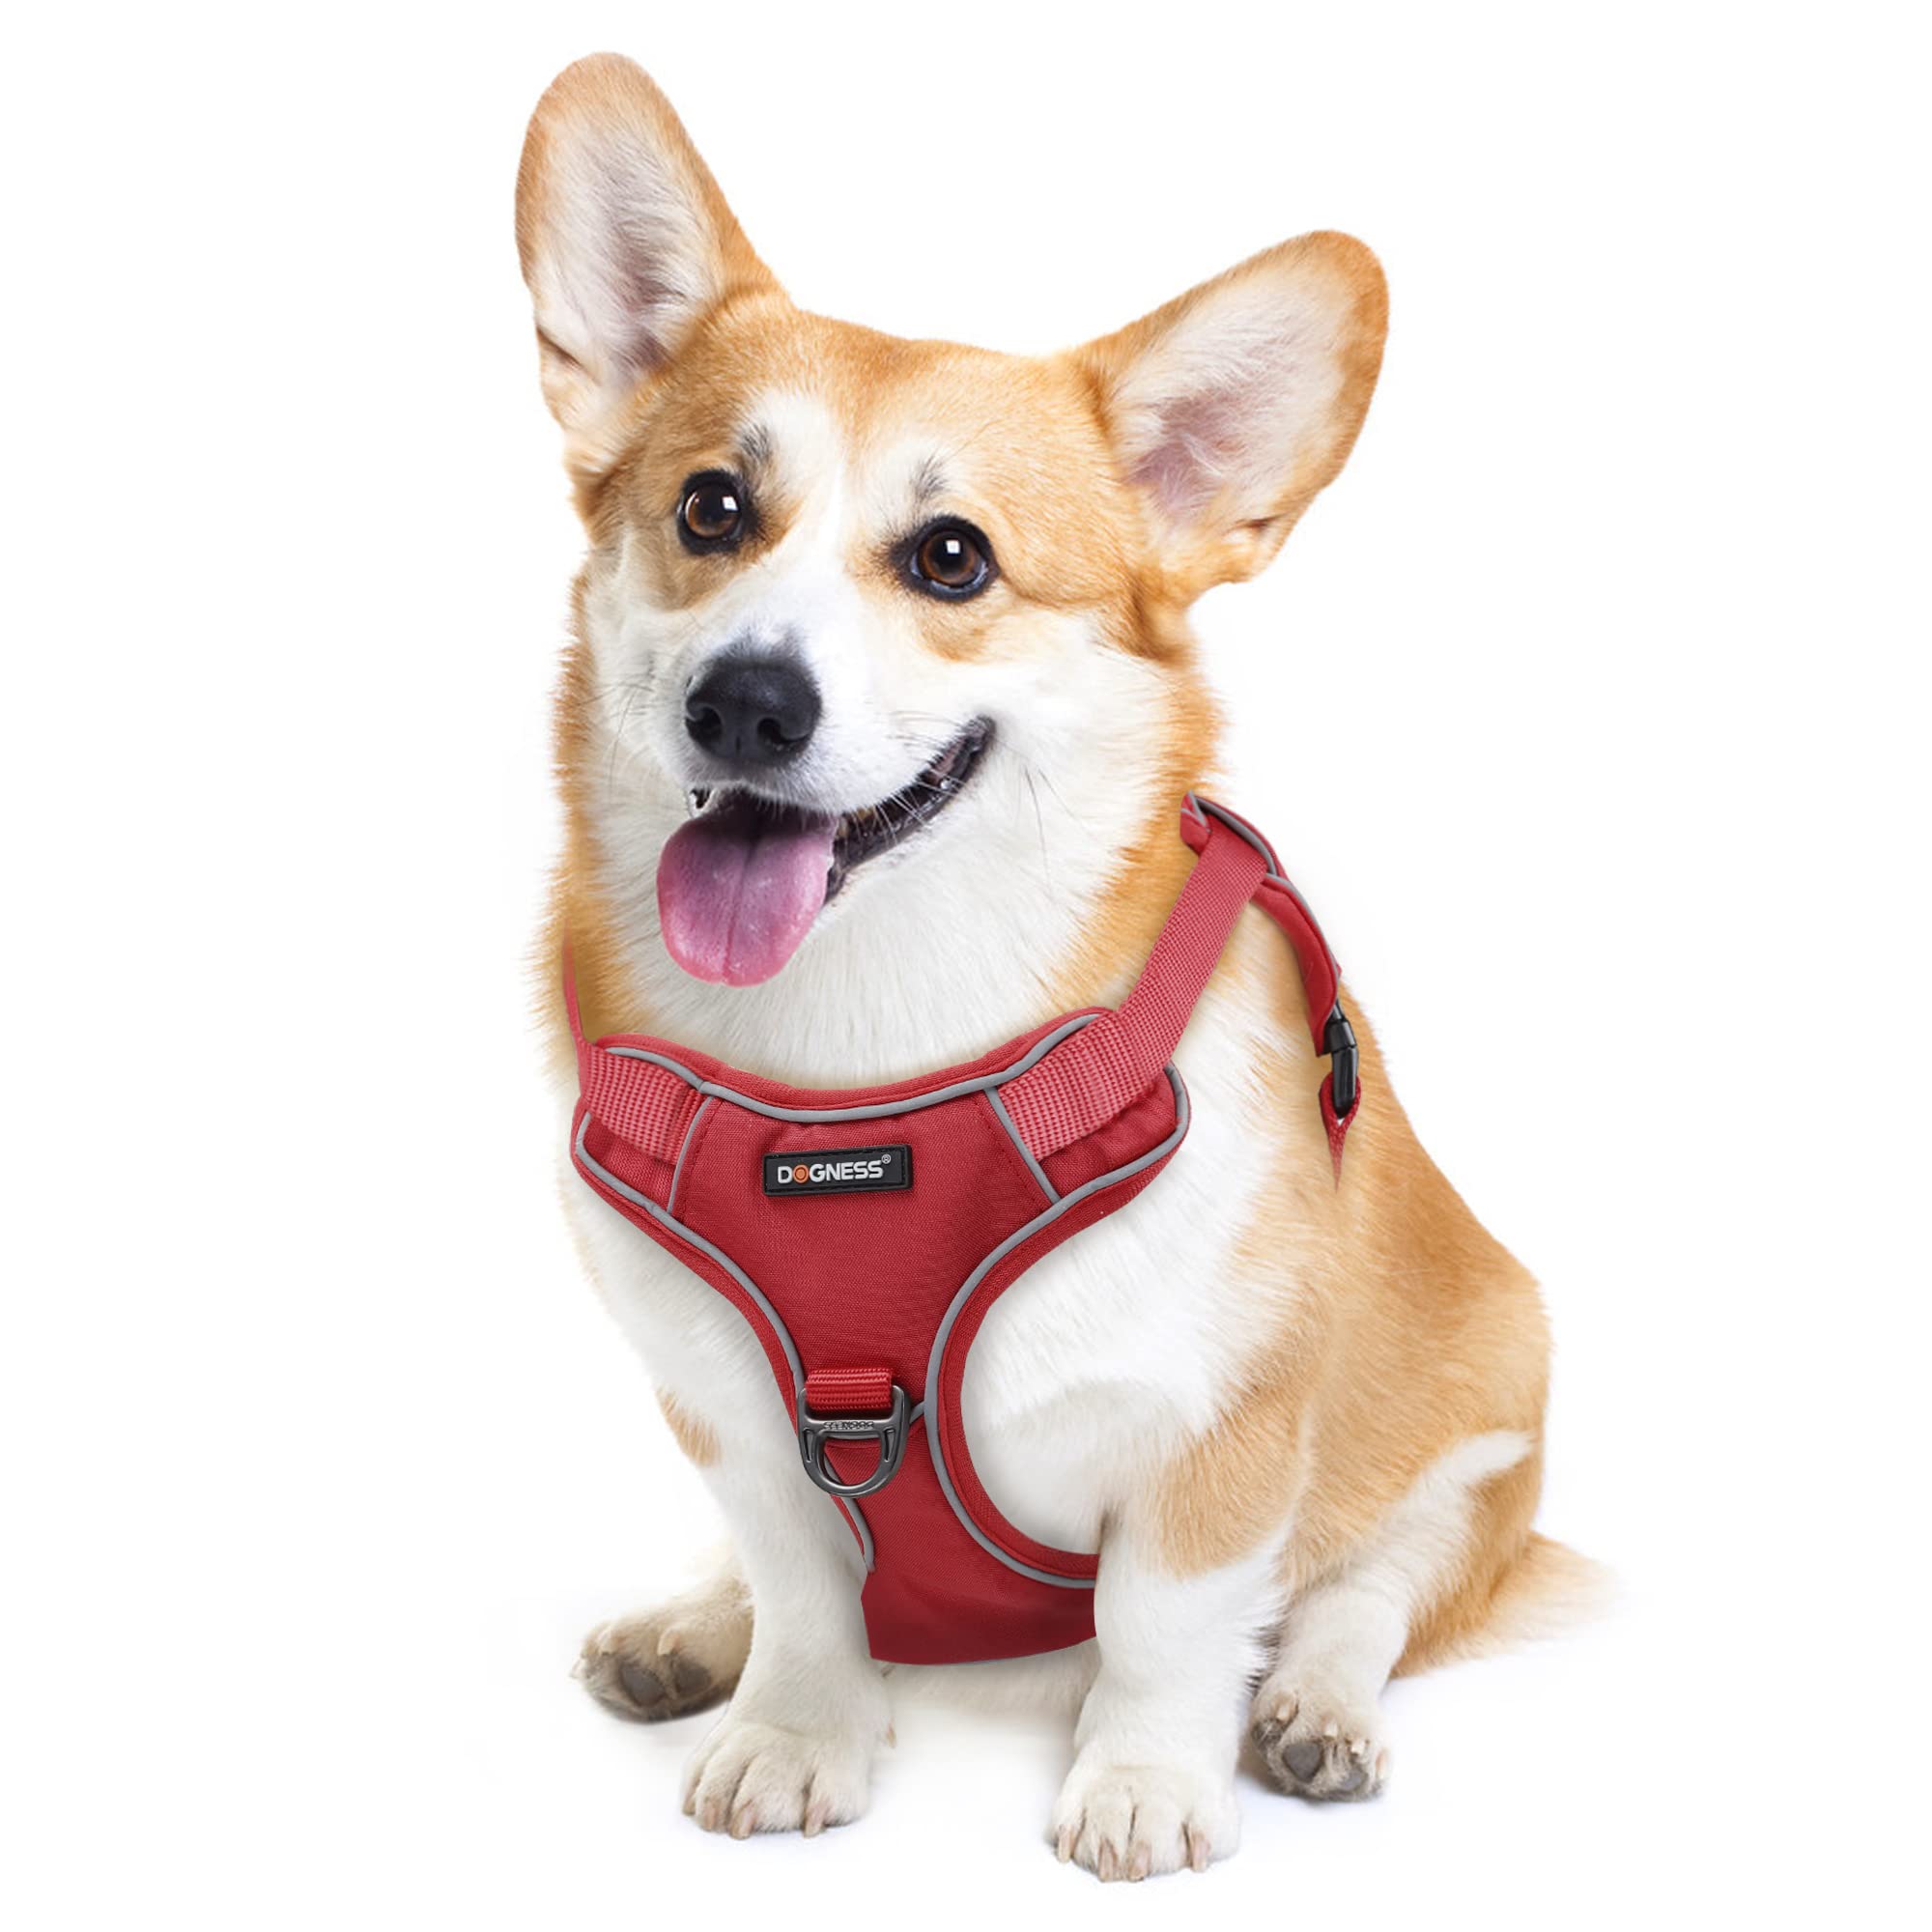 Dogness Hundegeschirr, reflektierend und gepolstert, mit einfachem Griff, Rot, M